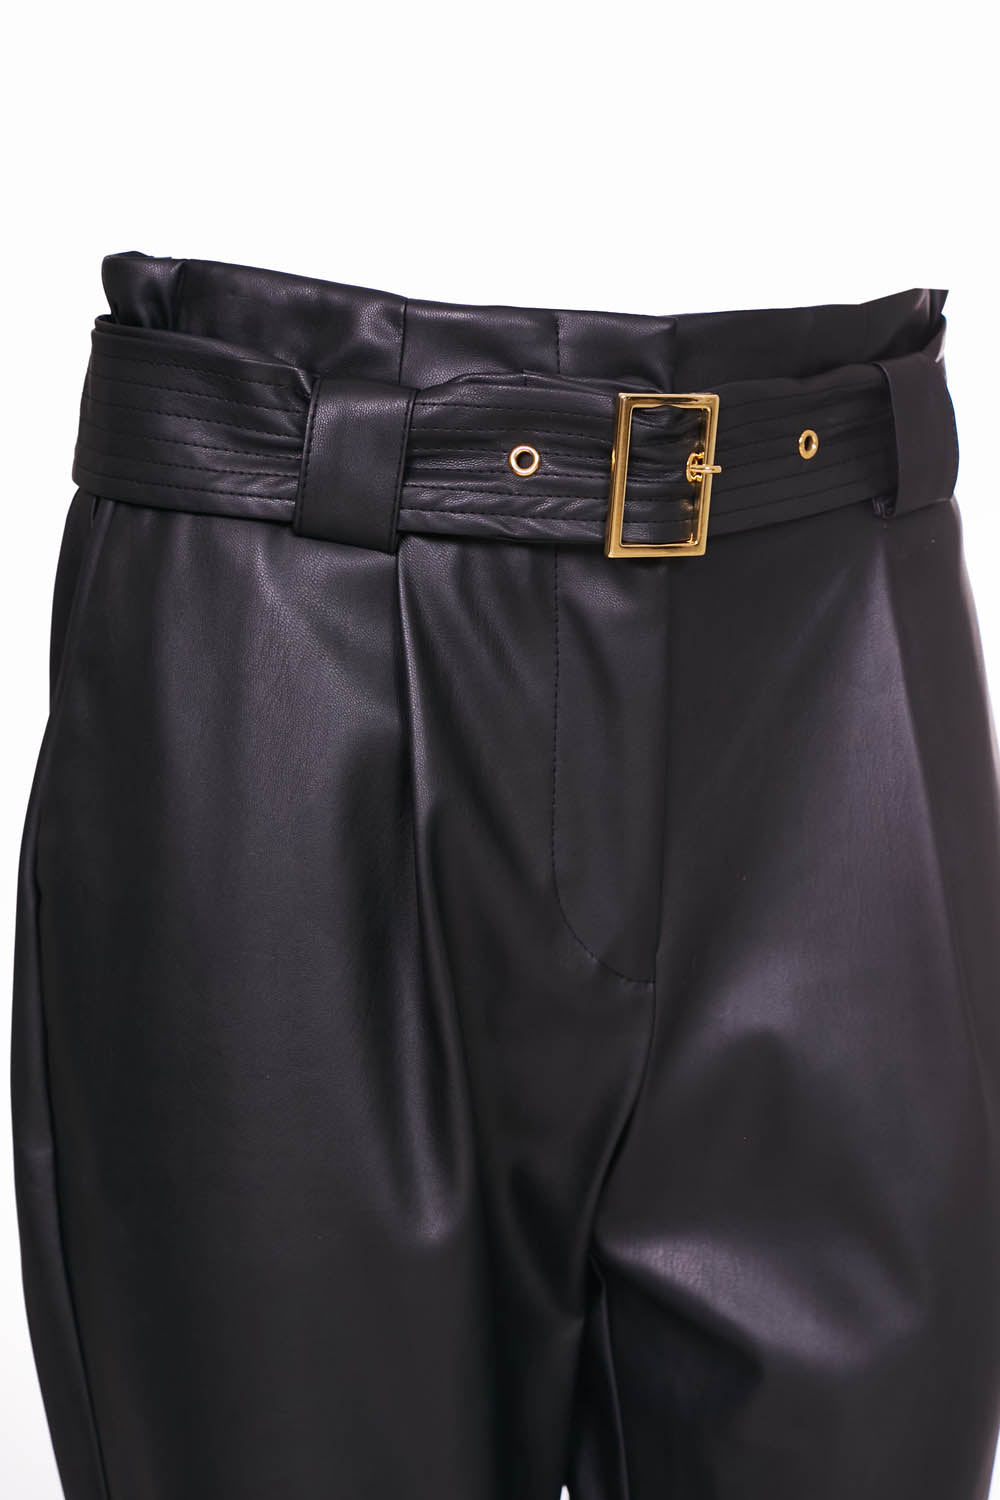 Naya Leatherette Trousers with belt - Maya Maya Ltd